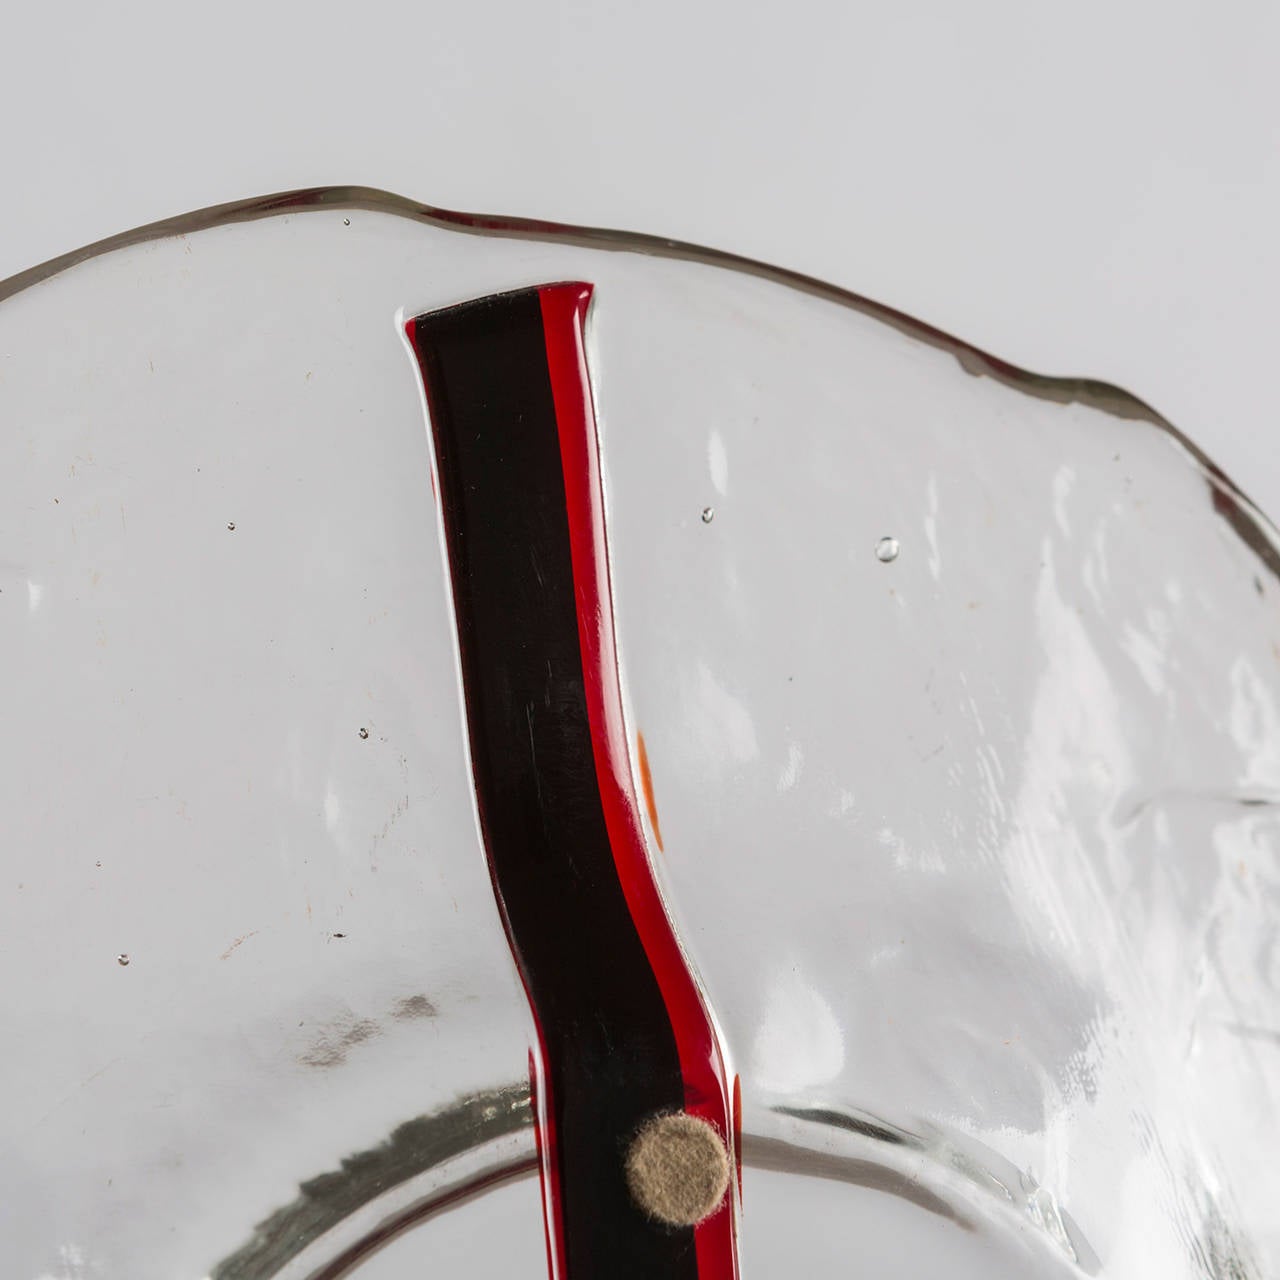 Remarquable ensemble de deux centres de table en verre de Murano par Fratelli Toso.
Pièces de cristal épaisses avec des bandes de gazon noires et rouges.